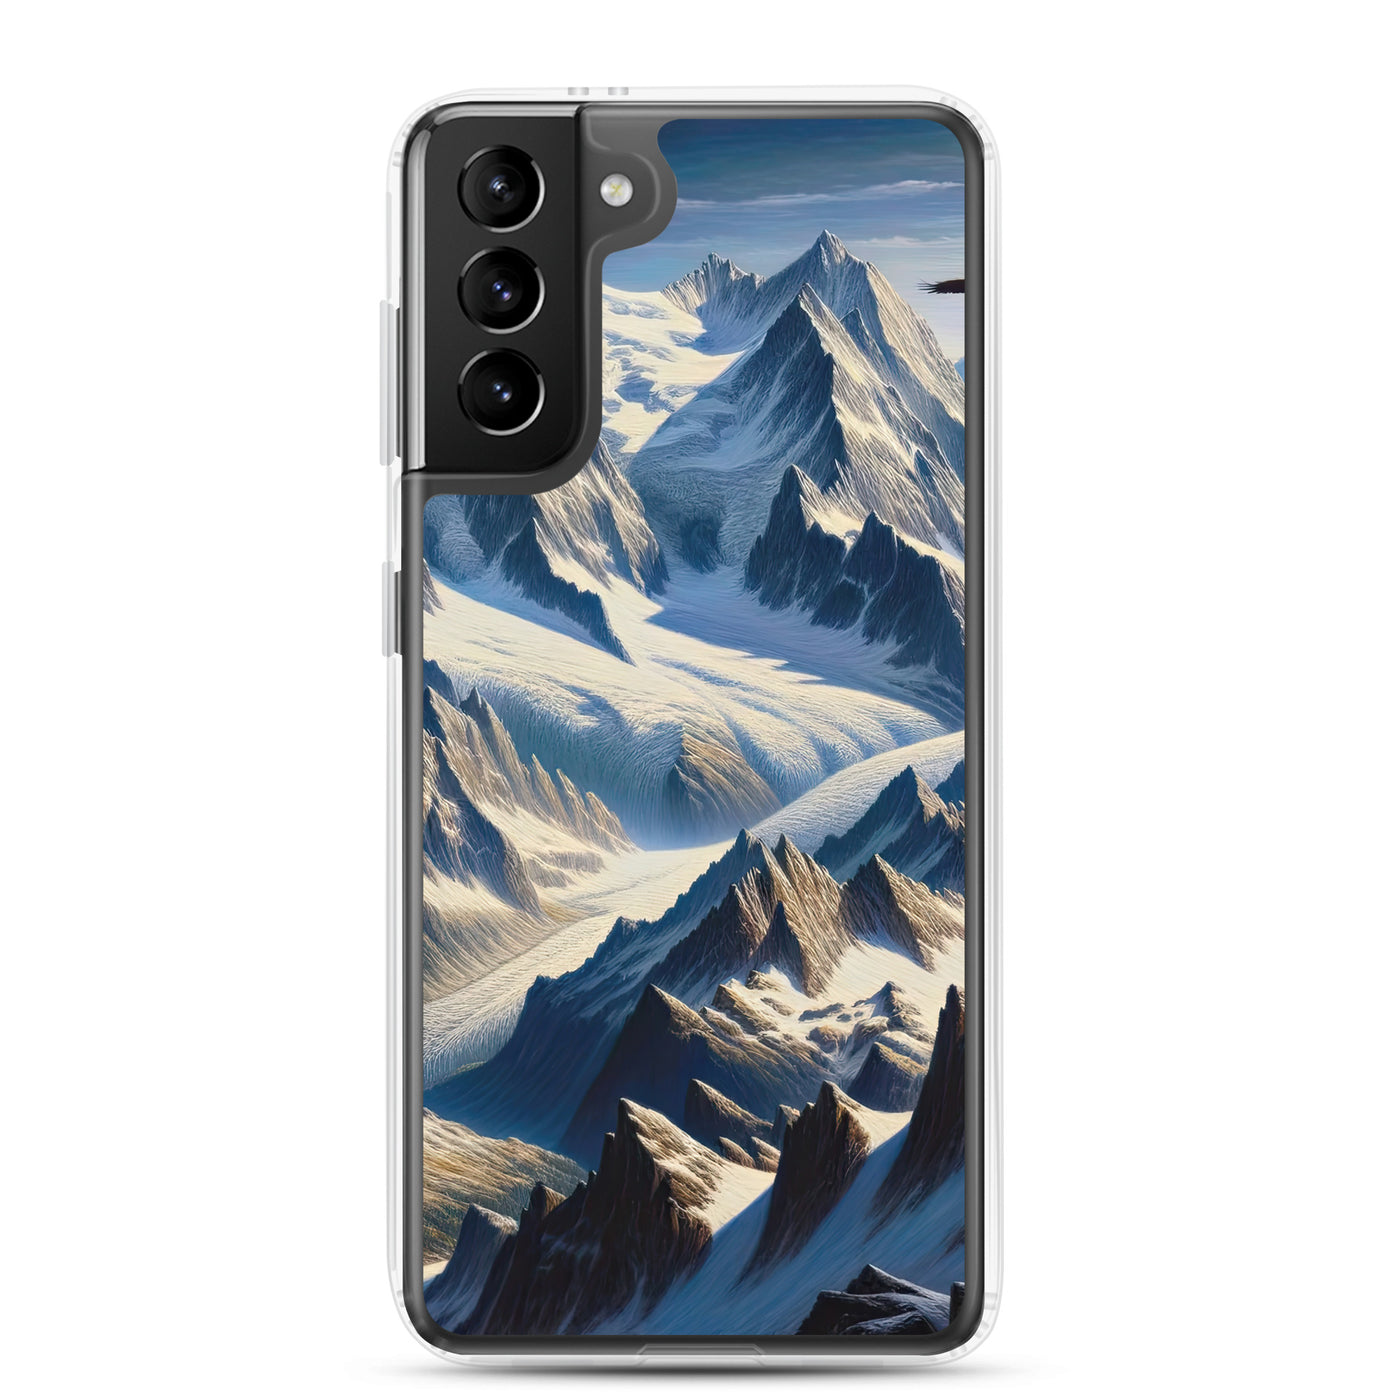 Ölgemälde der Alpen mit hervorgehobenen zerklüfteten Geländen im Licht und Schatten - Samsung Schutzhülle (durchsichtig) berge xxx yyy zzz Samsung Galaxy S21 Plus